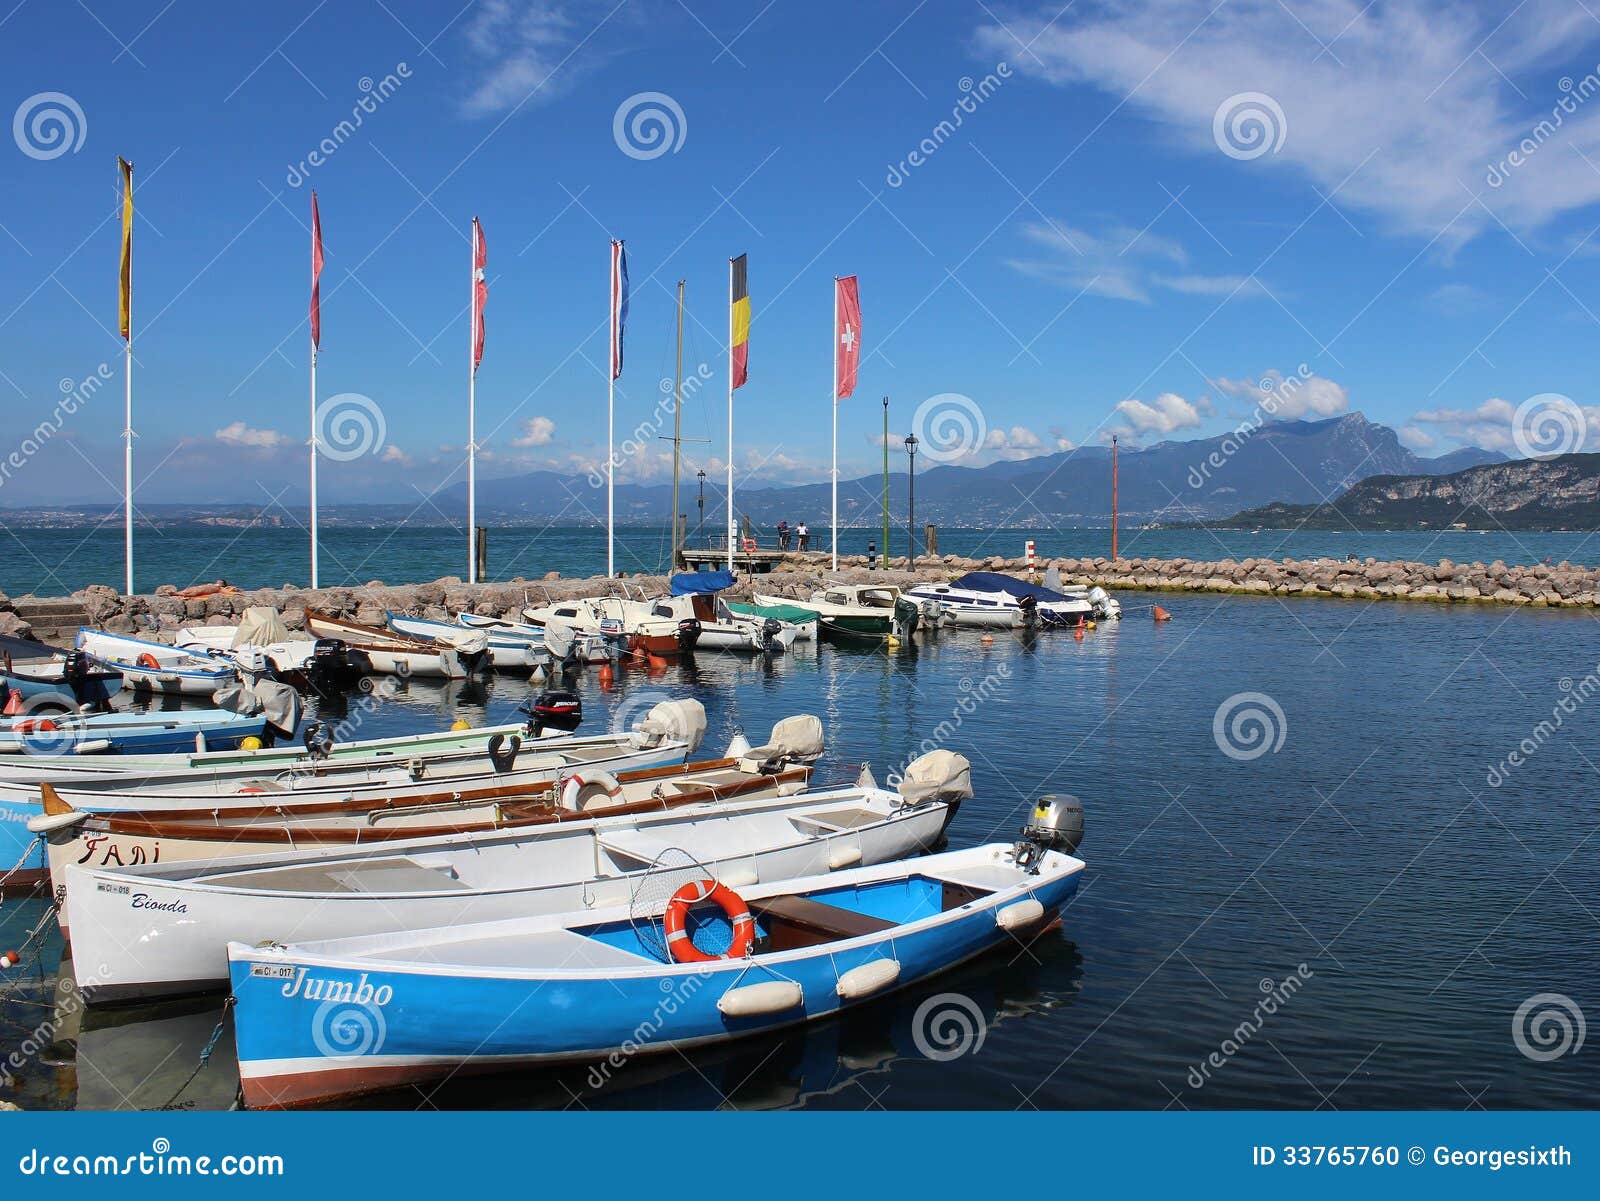 Small Boats In Cisano Harbor, Lake Garda, Italy Editorial ...